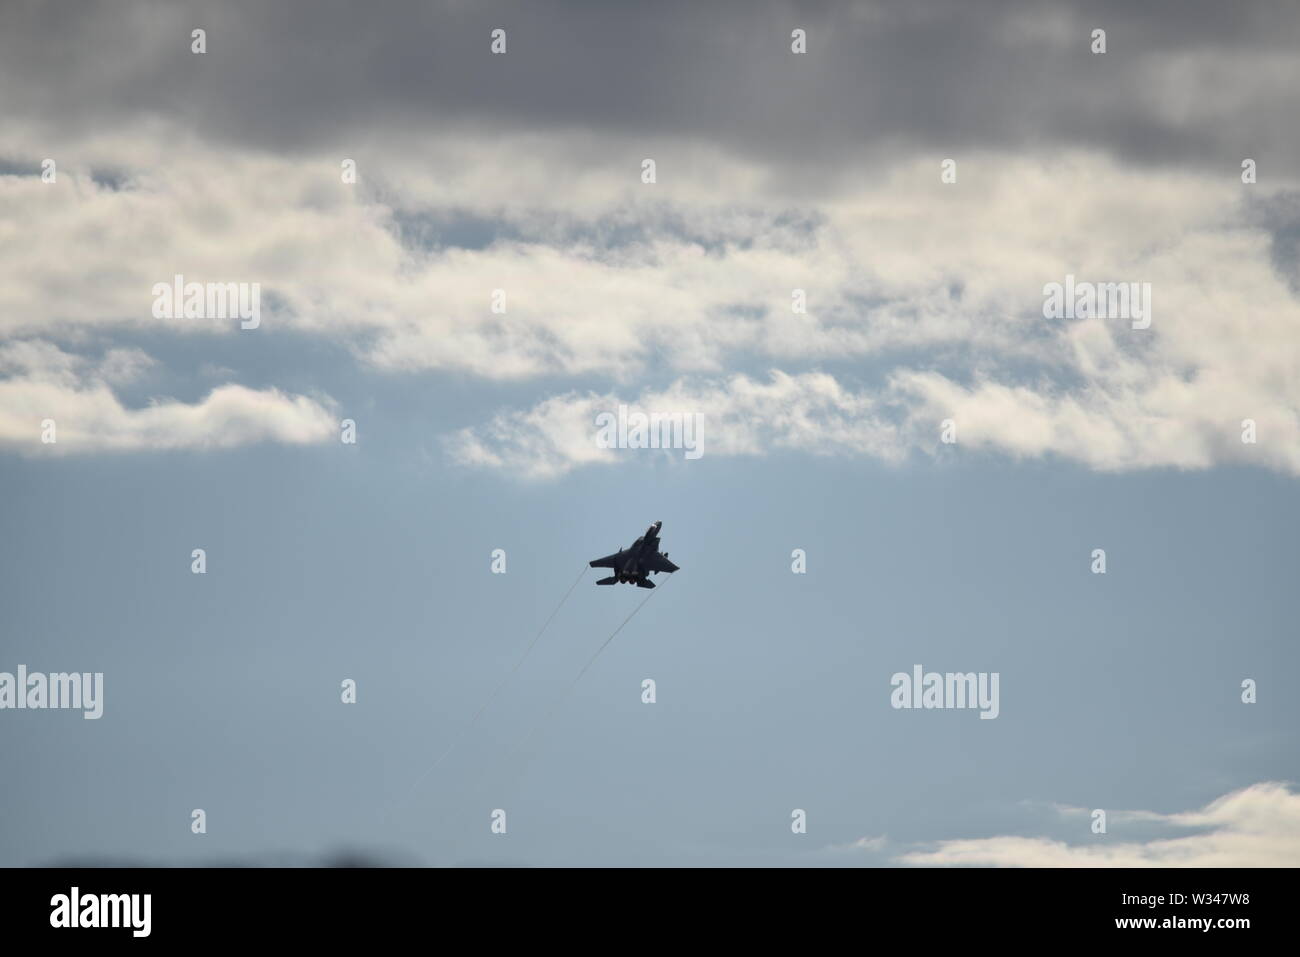 F 15 jet fighter en la distancia subiendo en un gris oscuro cielo nublado con sol casi abstracto patrones de fondo. Foto de stock